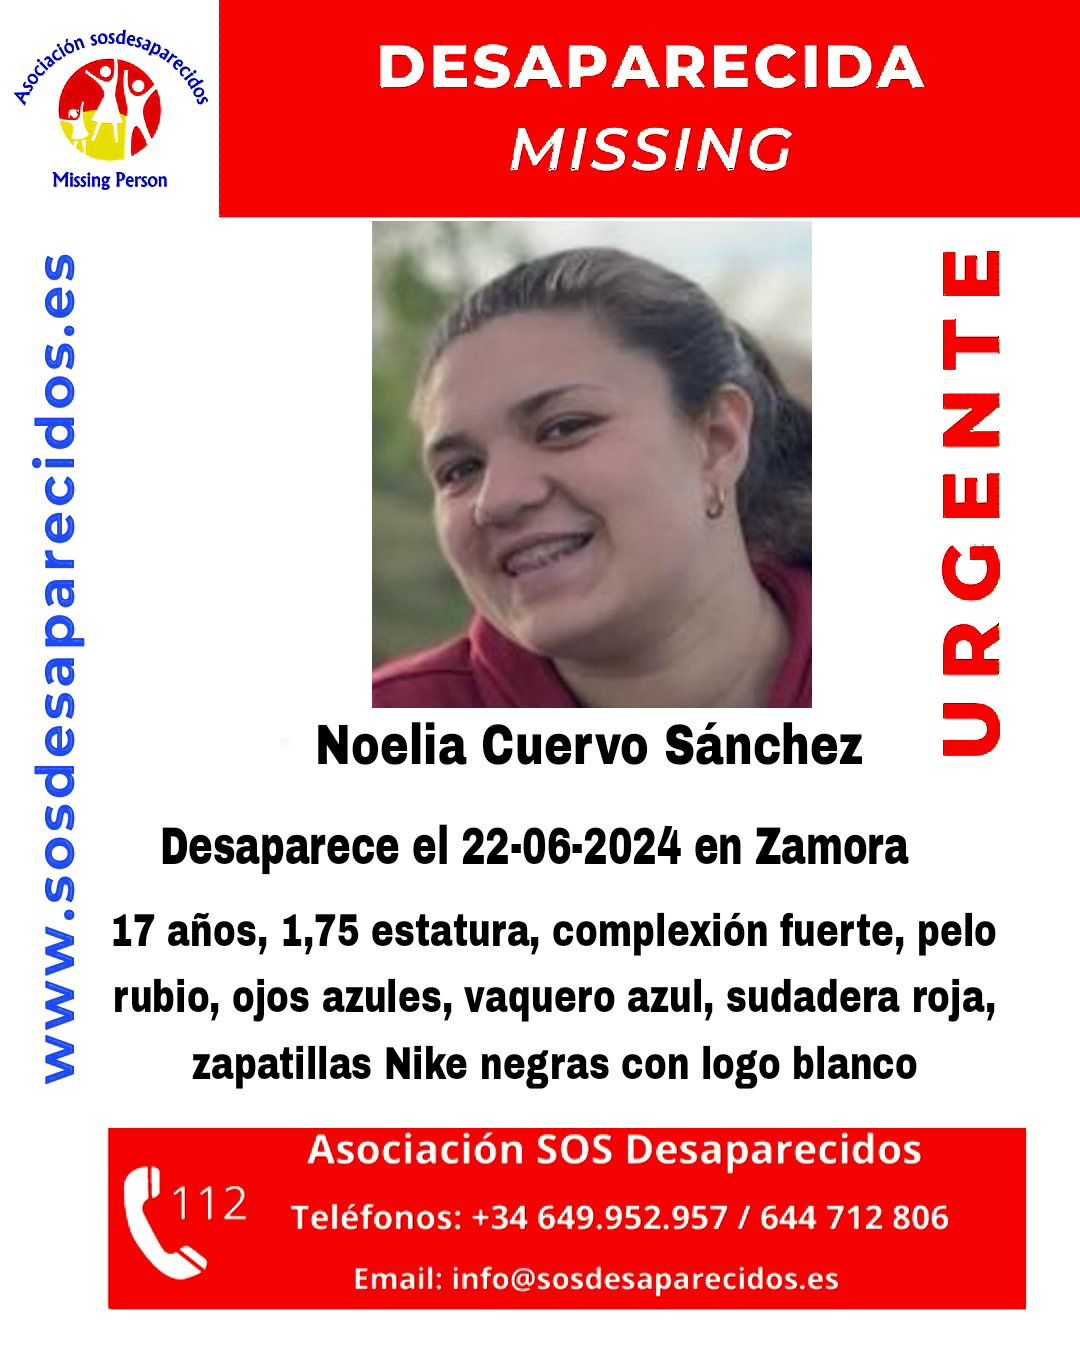 Noelia Cuervo Sánchez, desaparecida